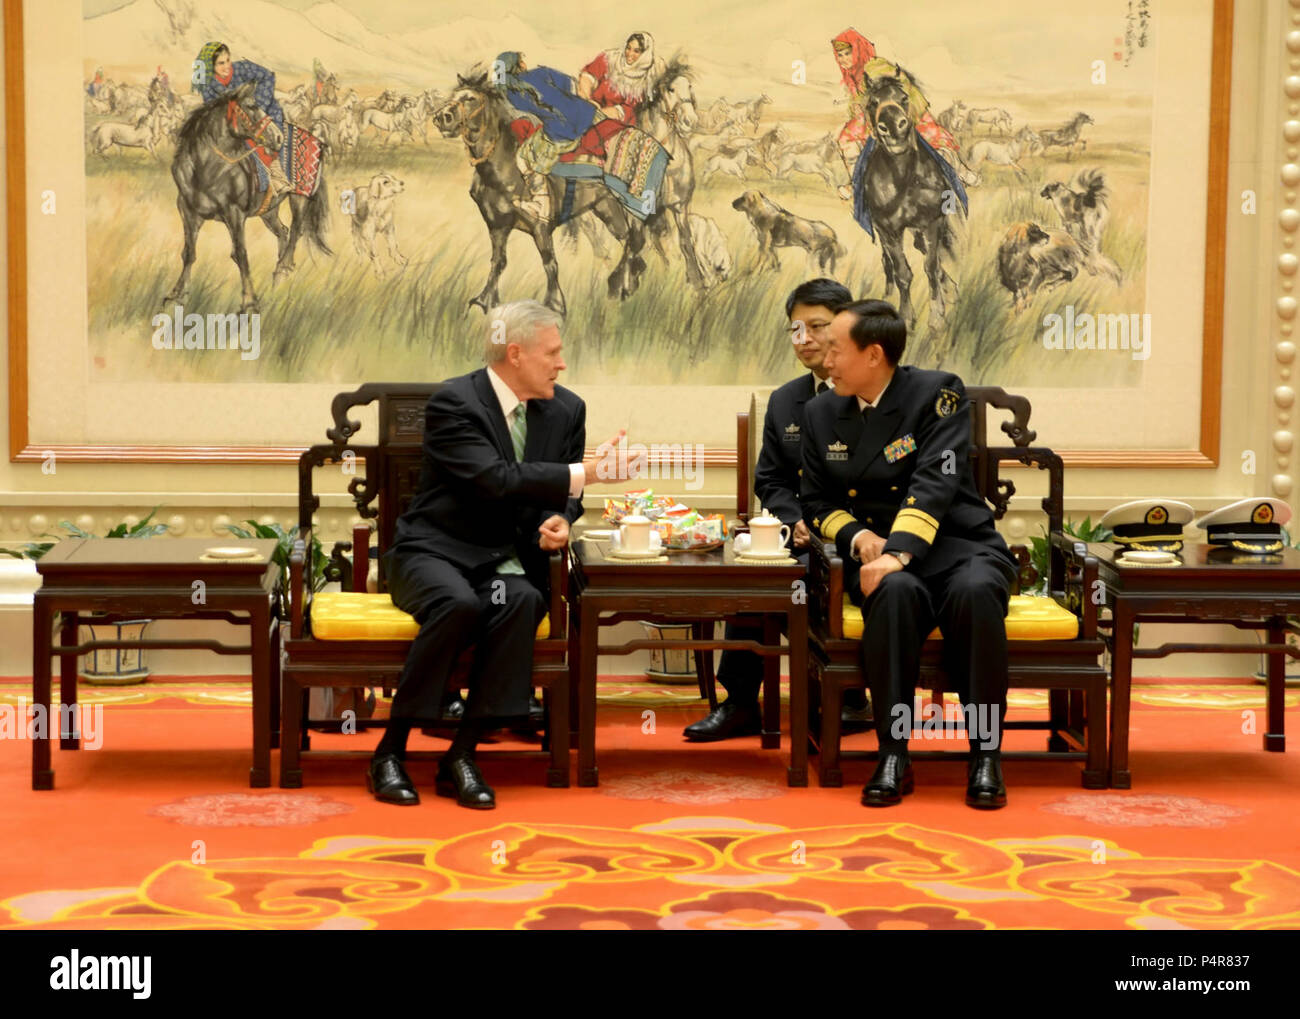 Sekretär der Marine Ray Mabus, Links, trifft sich mit der Chinesischen Marine hinten Adm. Zhang Jianchang November 26, 2012, in Peking. Mabus besucht China die Umstrukturierung der US-Verteidigung Ressourcen auf die Asien-pazifik-Region zu diskutieren. Stockfoto